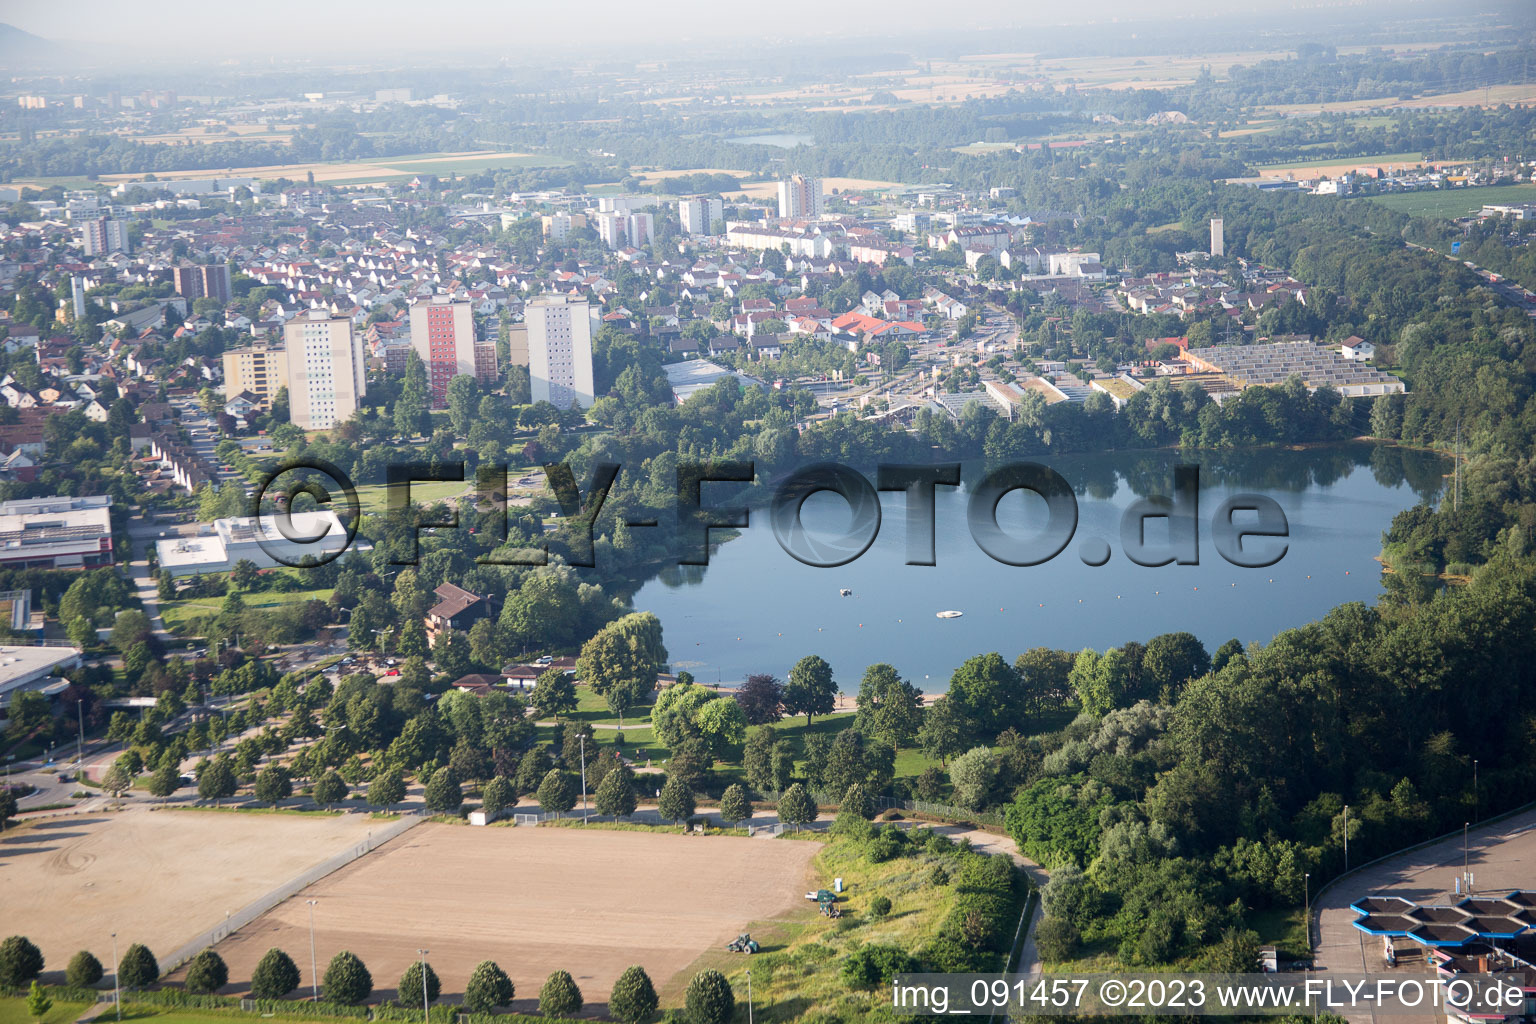 Bensheim im Bundesland Hessen, Deutschland aus der Drohnenperspektive